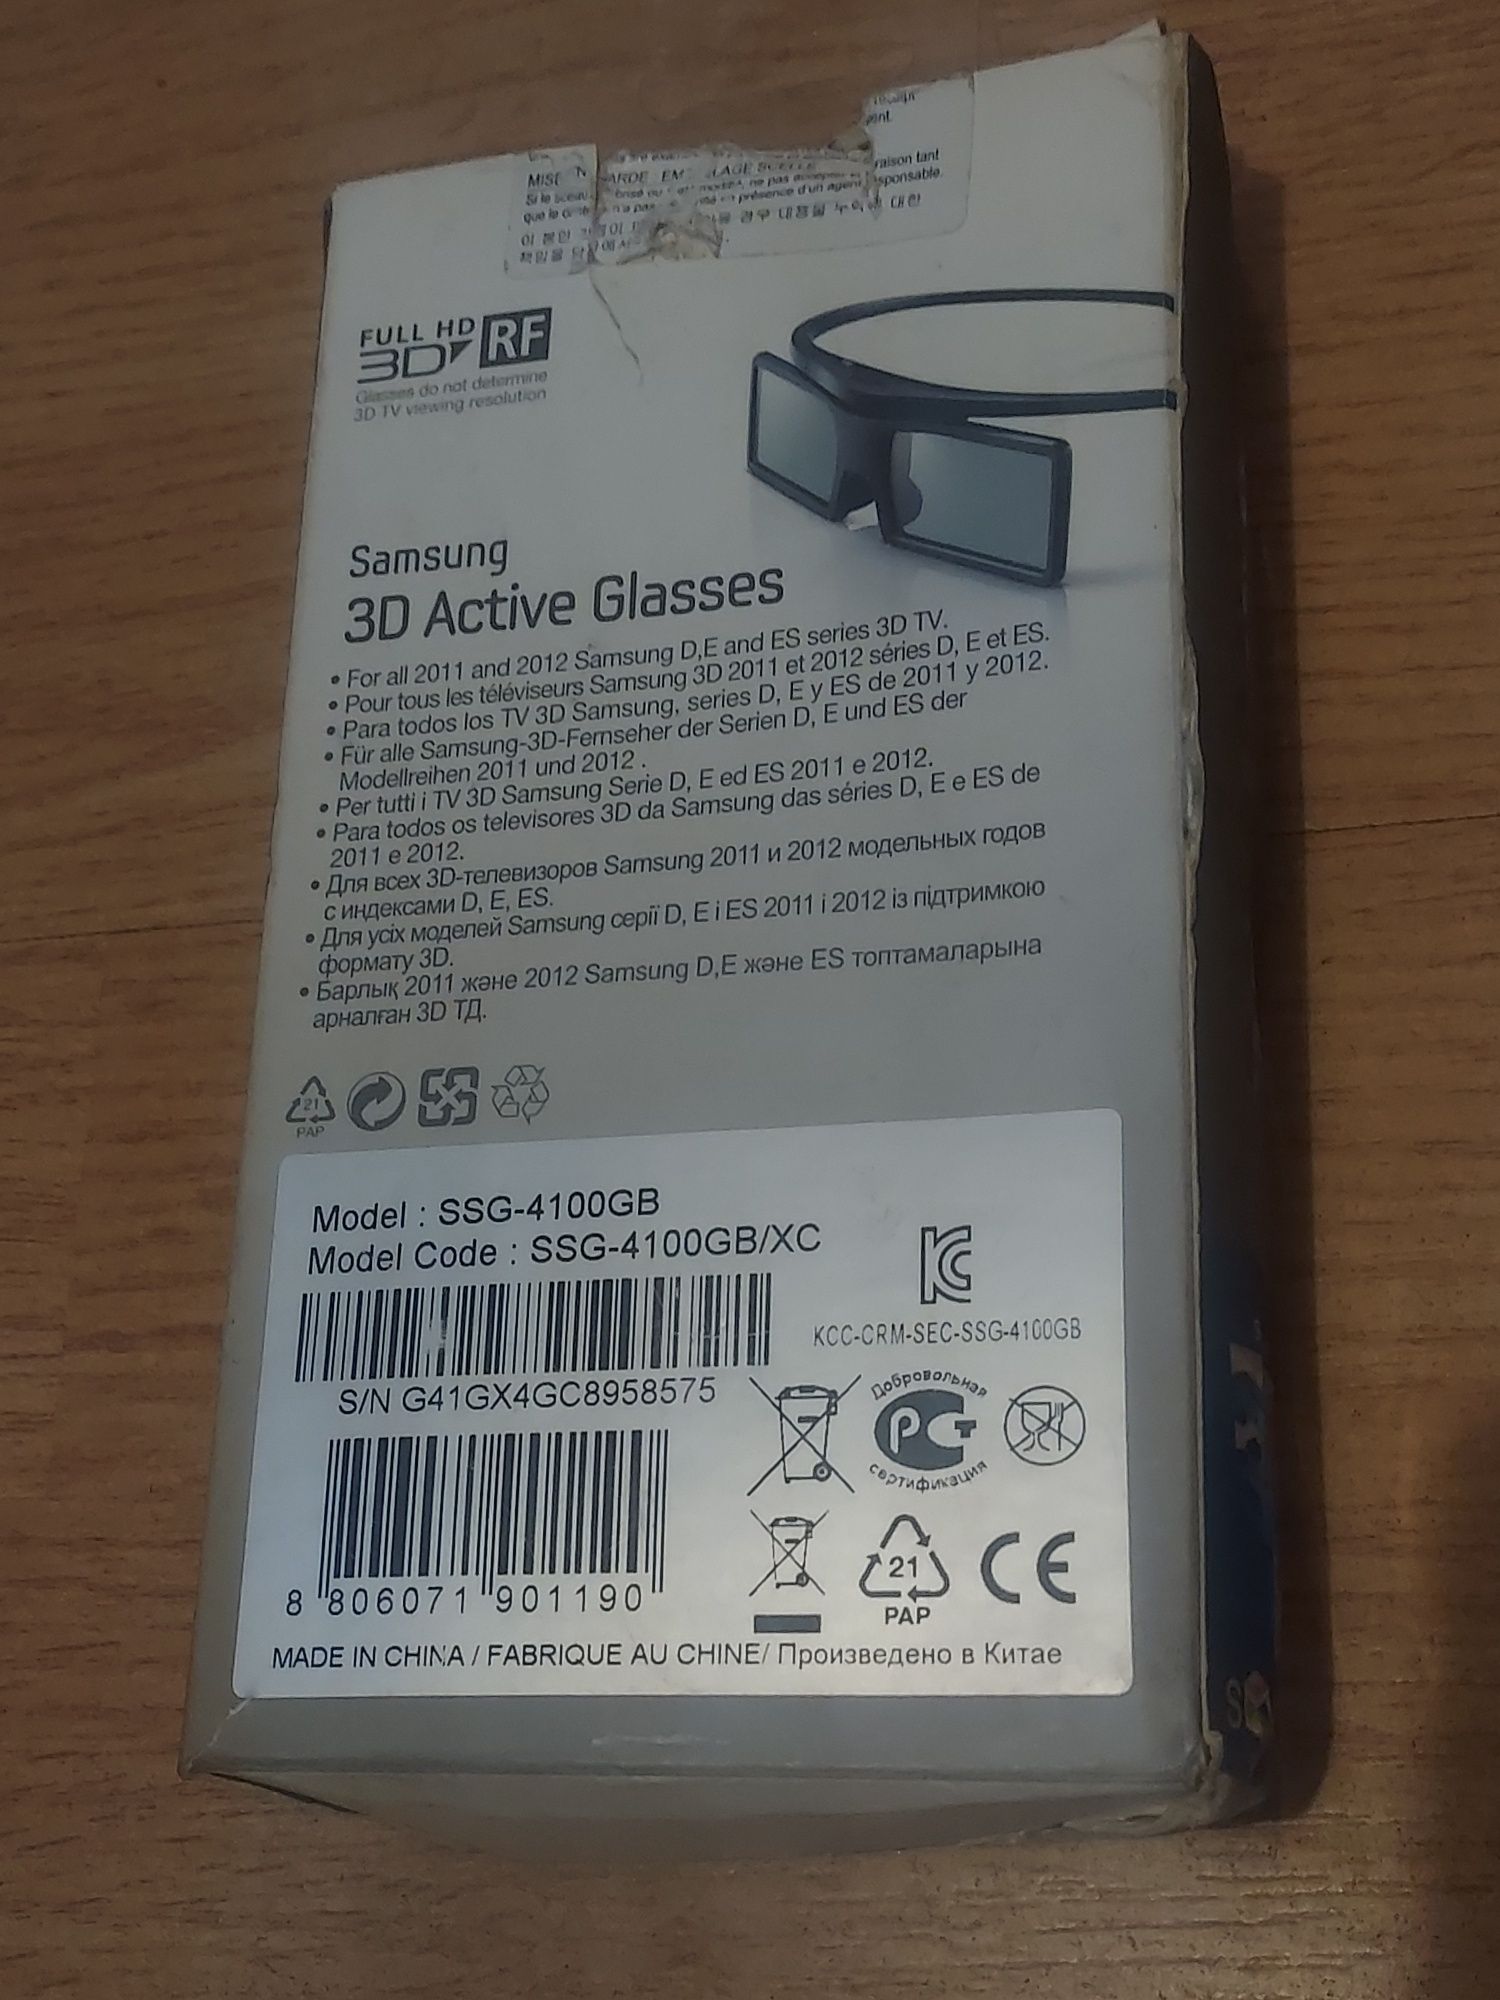 Ochelari 3D ActiveGlasses Samsung SSG 4100GB